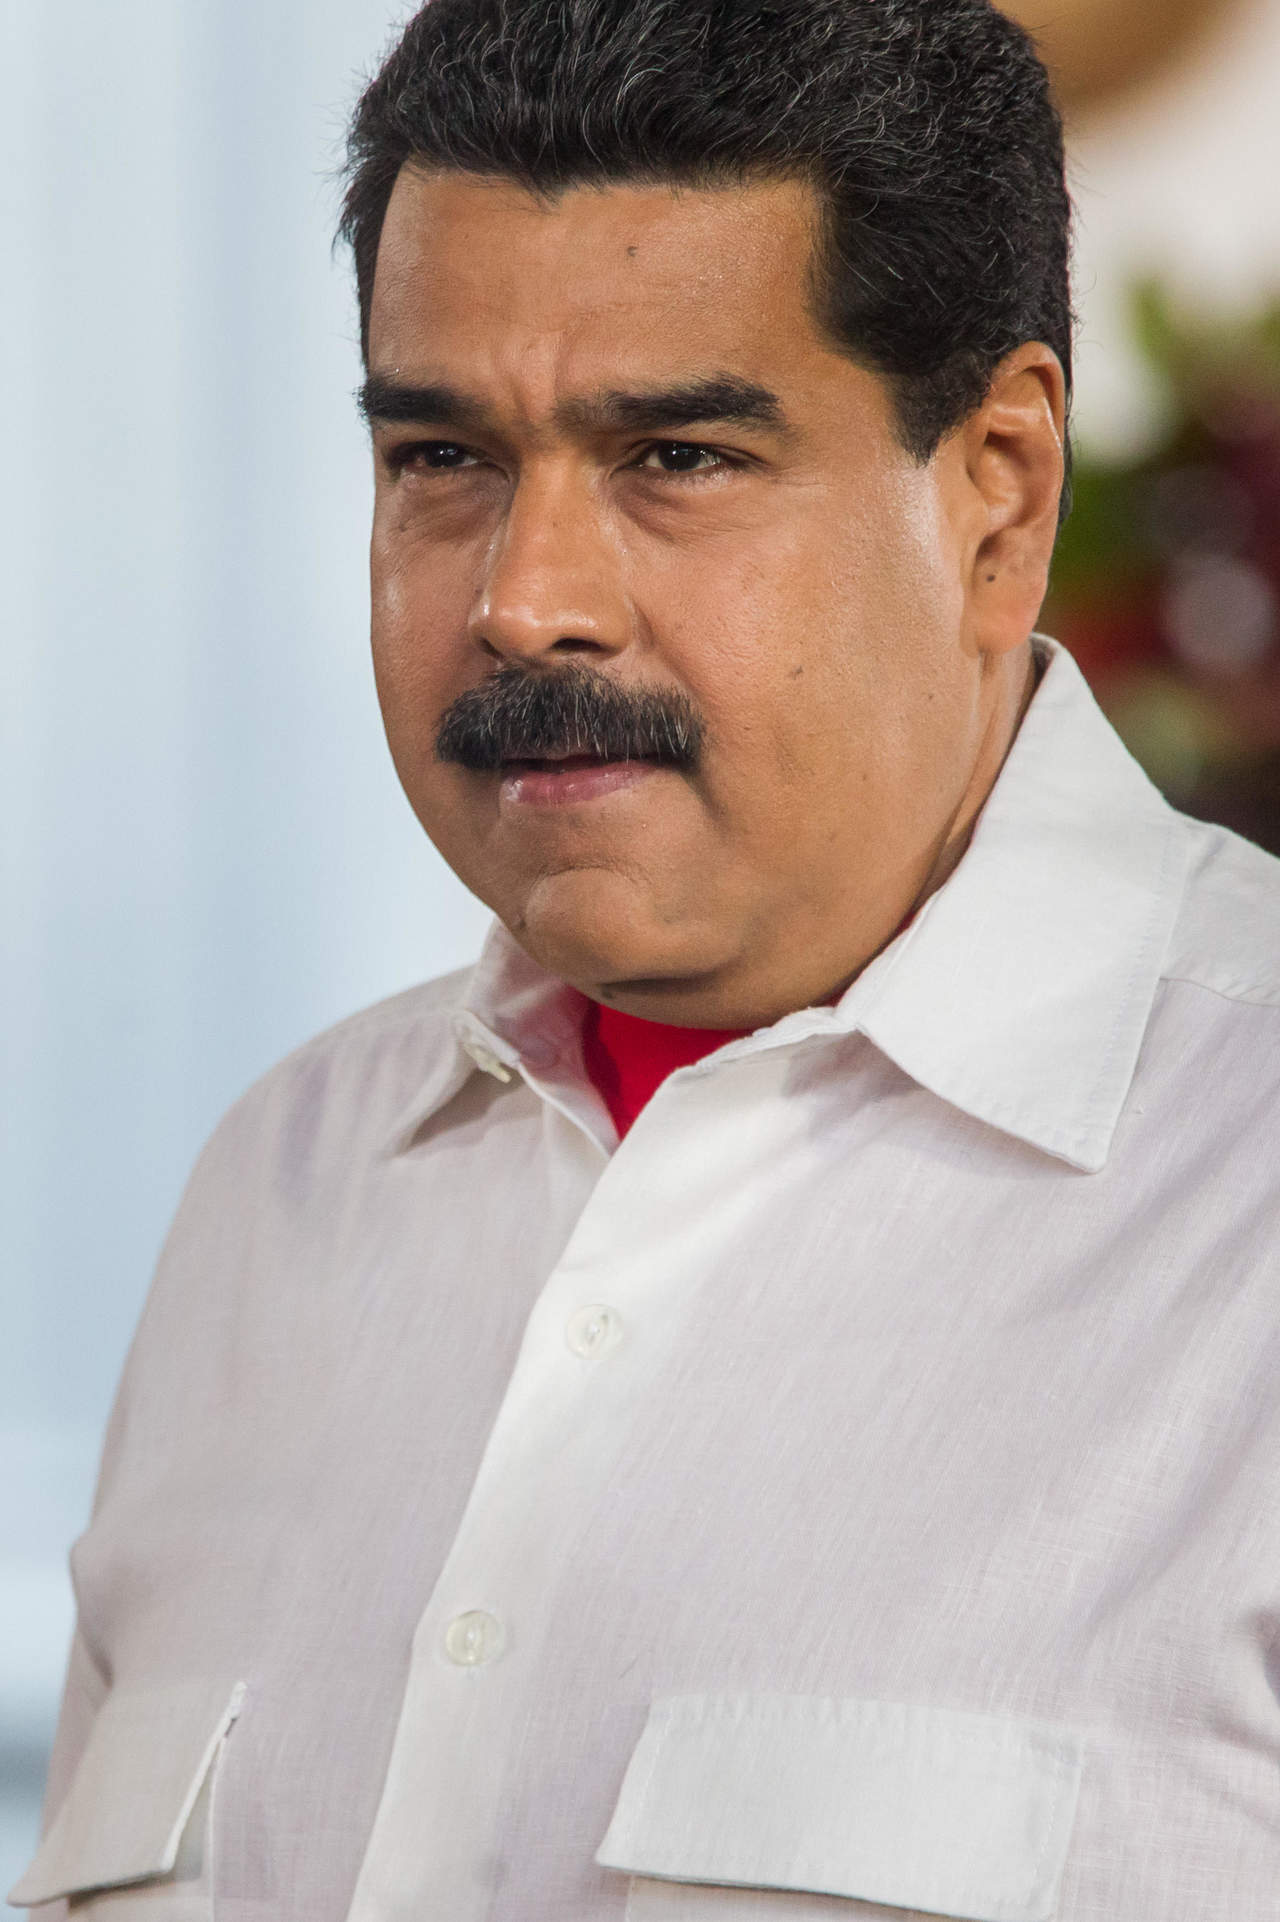 Maduro aseguró que Rajoy tiene “una visión imperial, colonial y racista” de un país como Venezuela. (ARCHIVO)